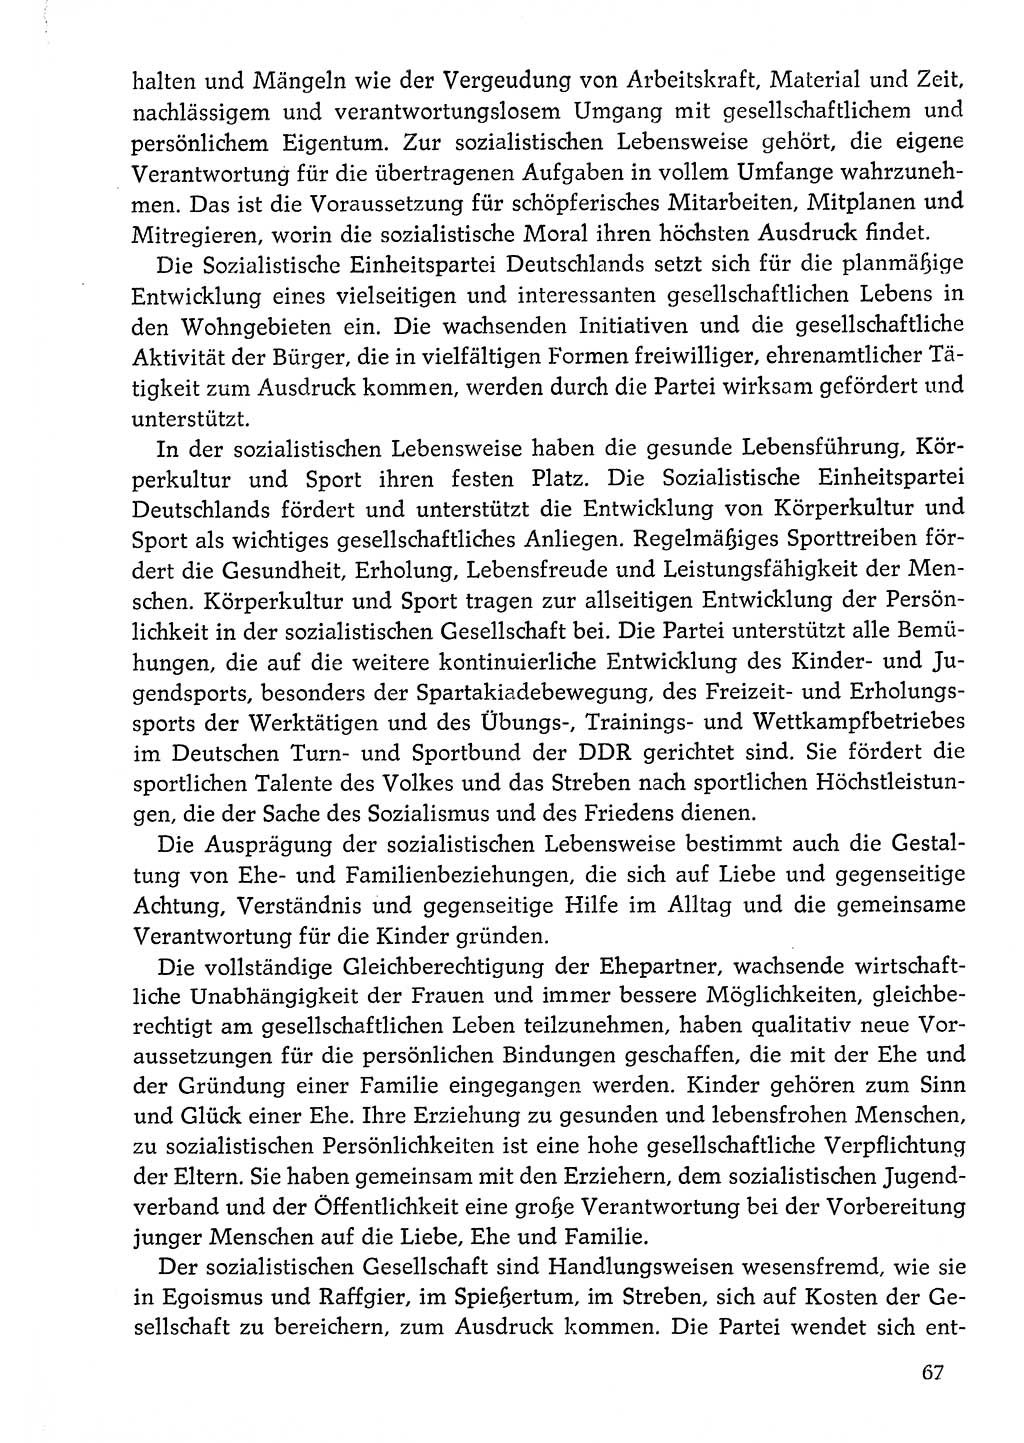 Dokumente der Sozialistischen Einheitspartei Deutschlands (SED) [Deutsche Demokratische Republik (DDR)] 1976-1977, Seite 67 (Dok. SED DDR 1976-1977, S. 67)